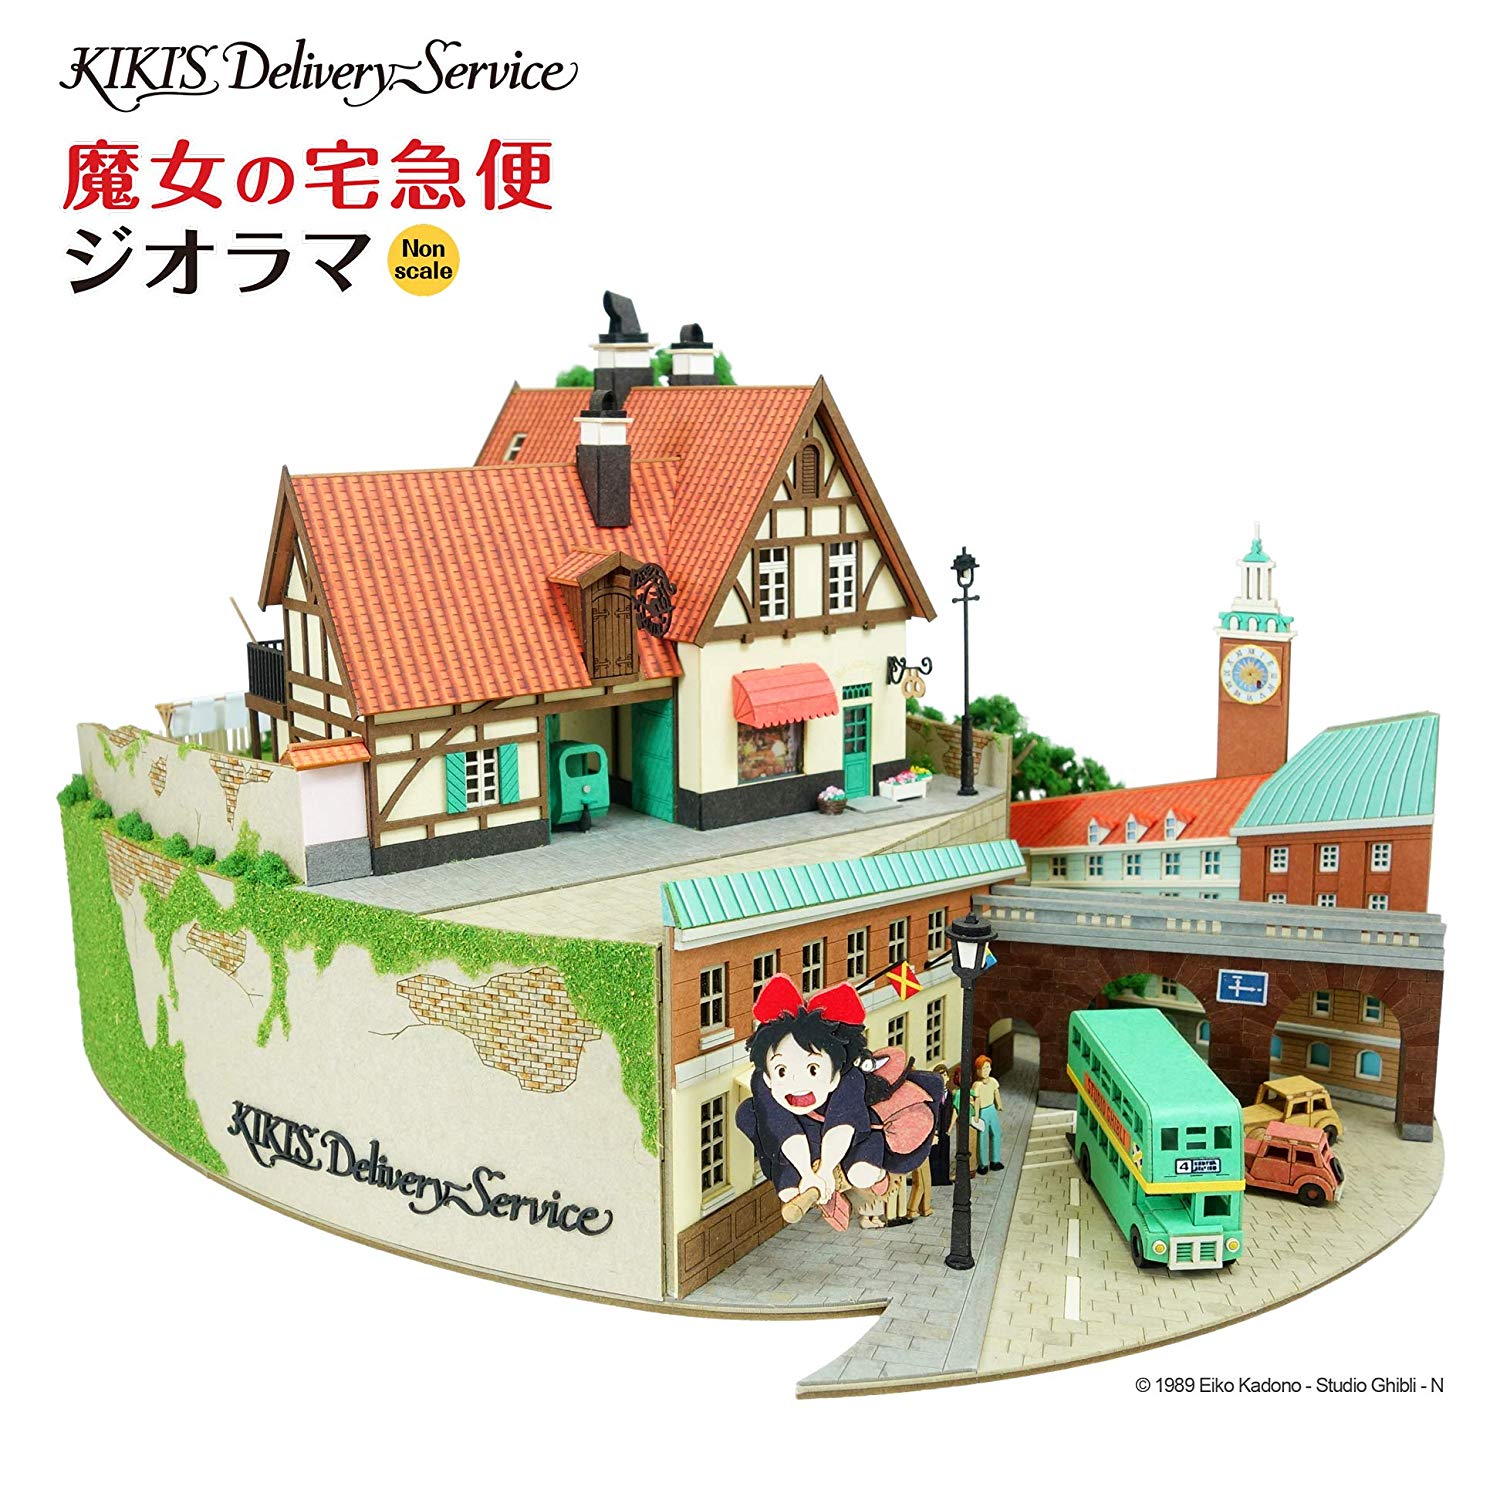 みにちゅあーとキット スタジオジブリシリーズ『魔女の宅急便ジオラマ』模型-014